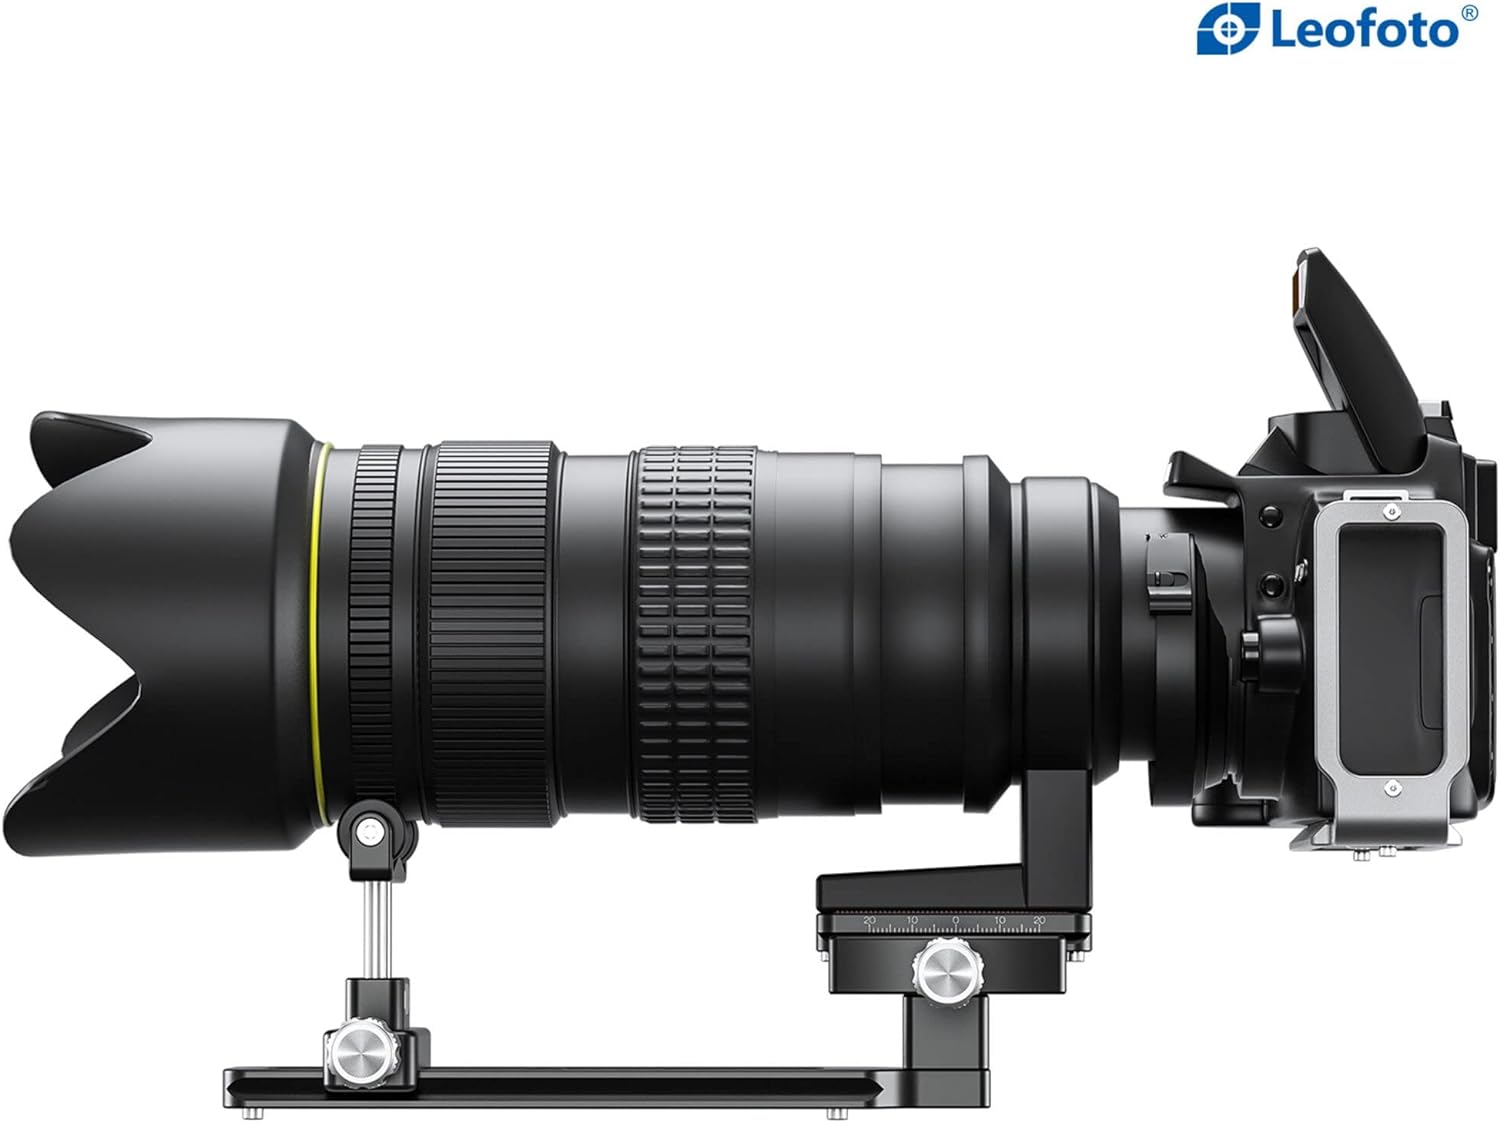 Leofoto VR-150S Dual Pivot Long Tele Lens Support with Arca Compatible QR